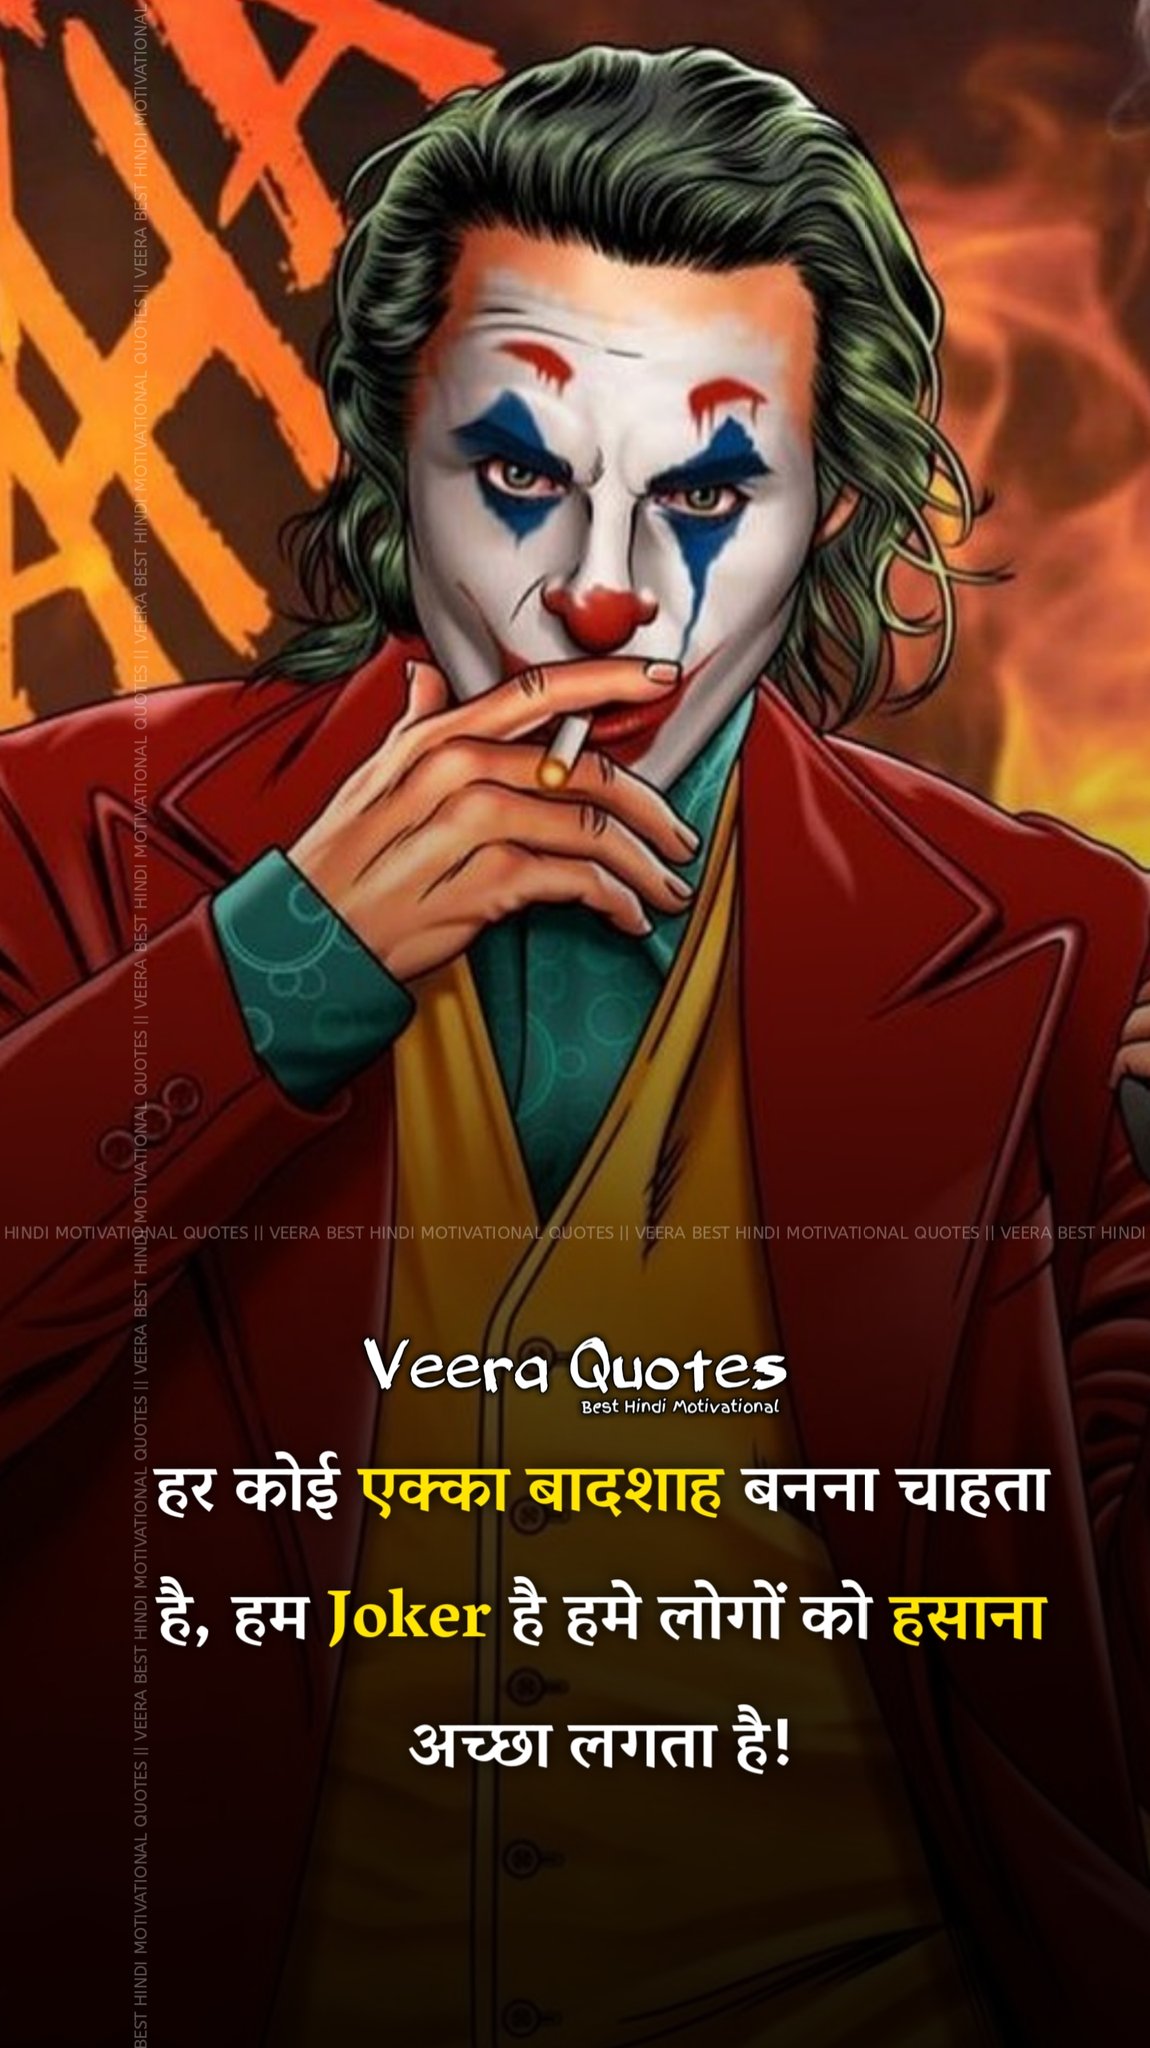 تويتر \ Veera Best Hindi Motivational Quotes على تويتر:  